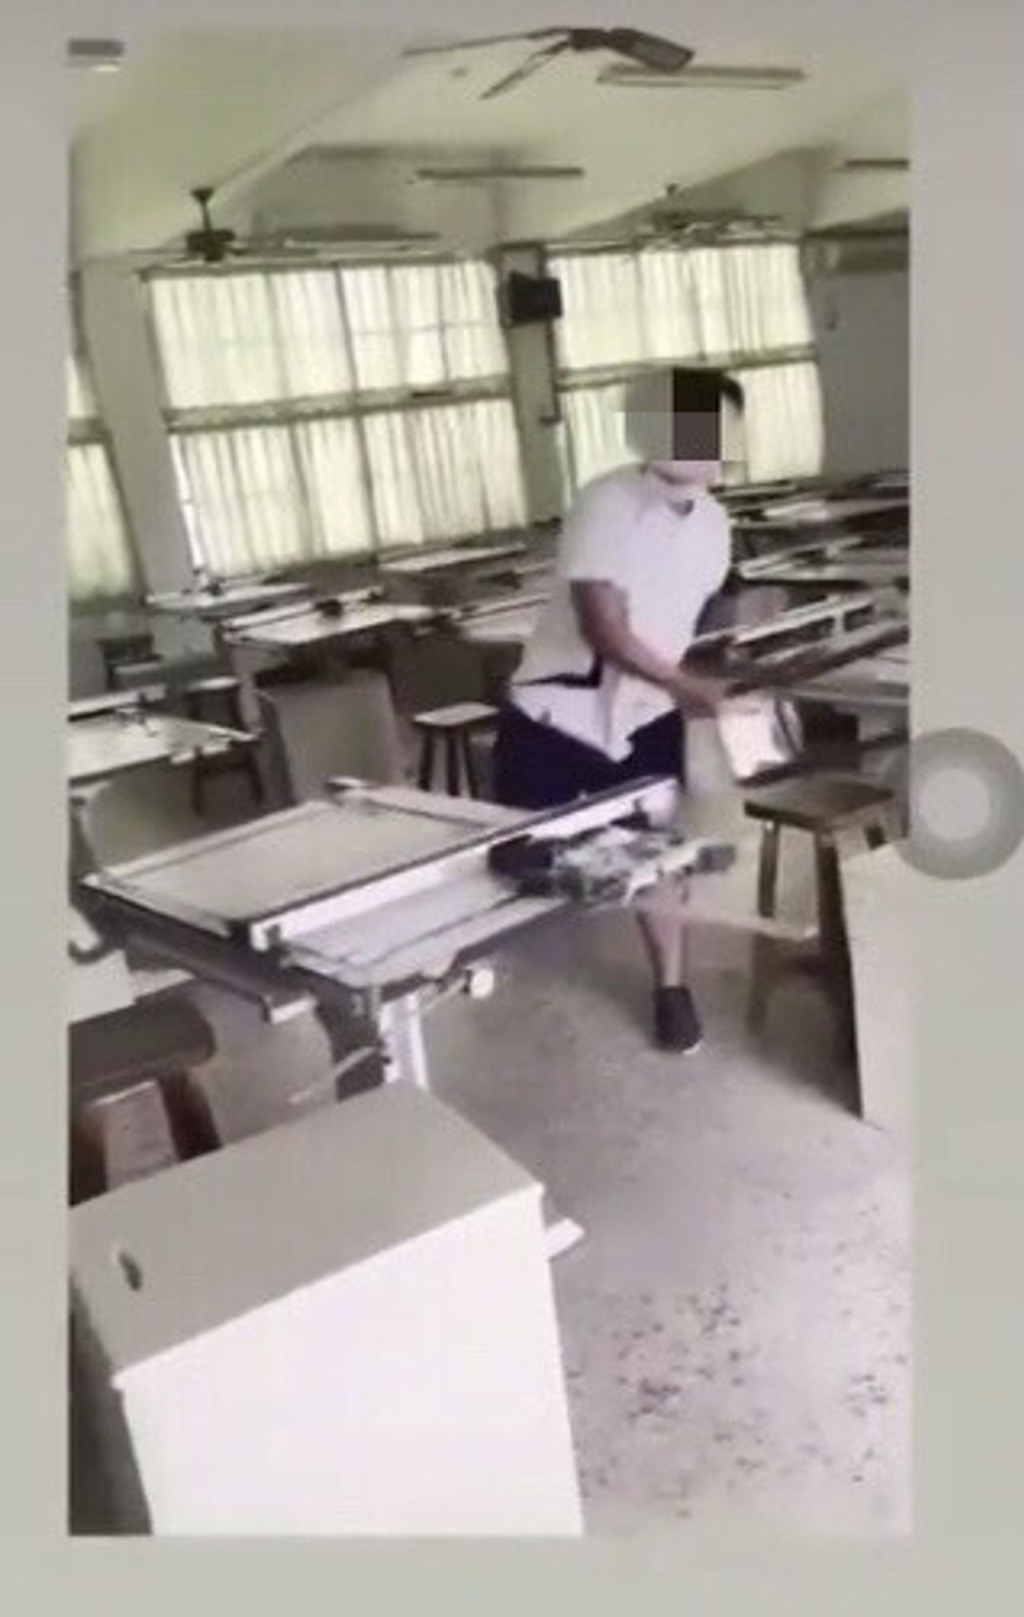 教室裡，男學生拿板凳狠砸製圖桌。(照片/翻攝《綠豆嘉義人》粉絲團)